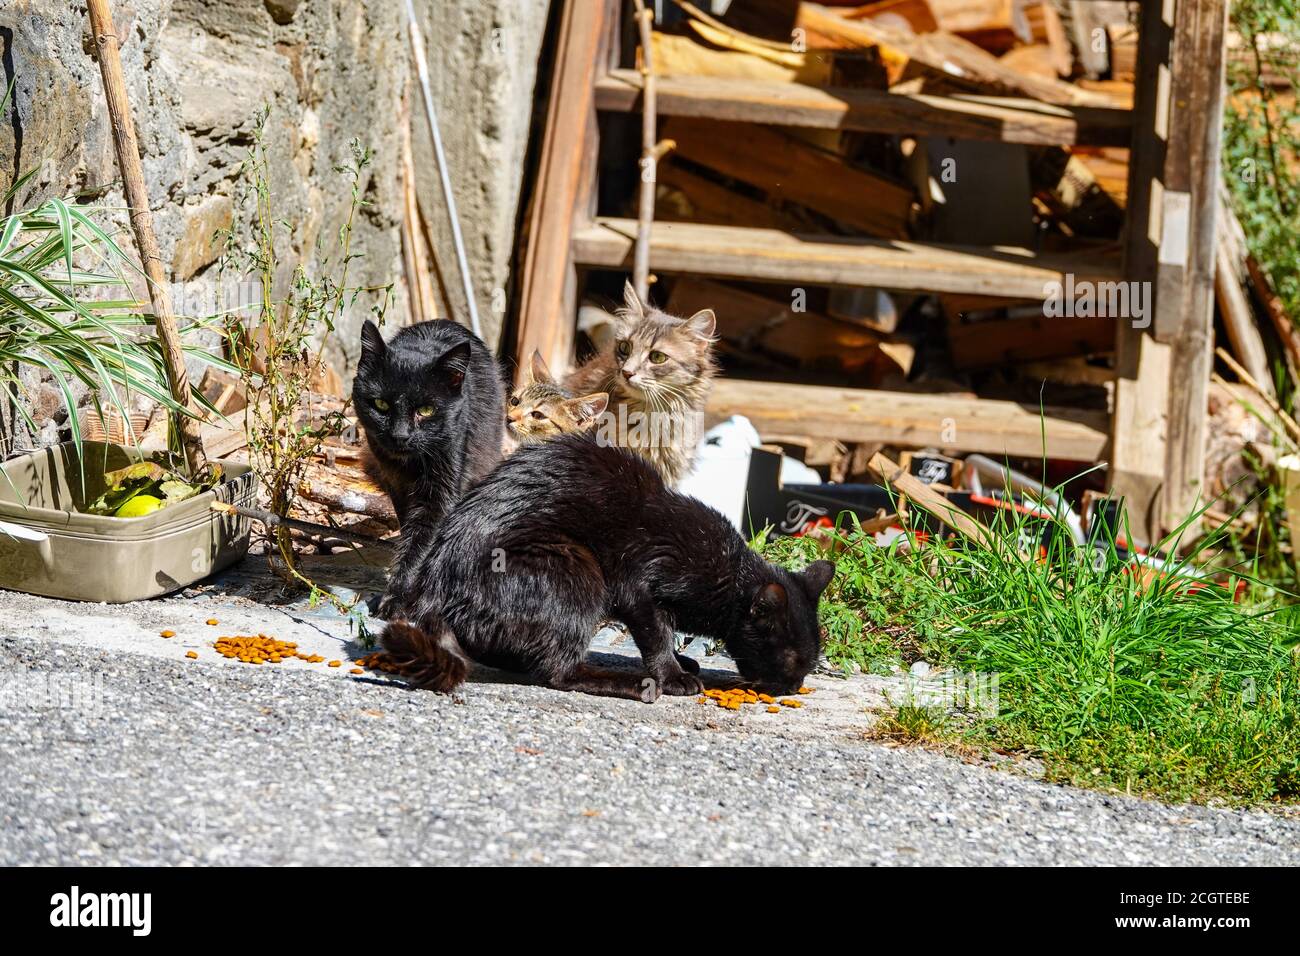 Gatos ferales negros y marrones nerviosos por escaleras de madera Puy-Saint-Vincent, estación de esquí, en verano, Parque Nacional Vanoise, Ecrins, Francia Foto de stock